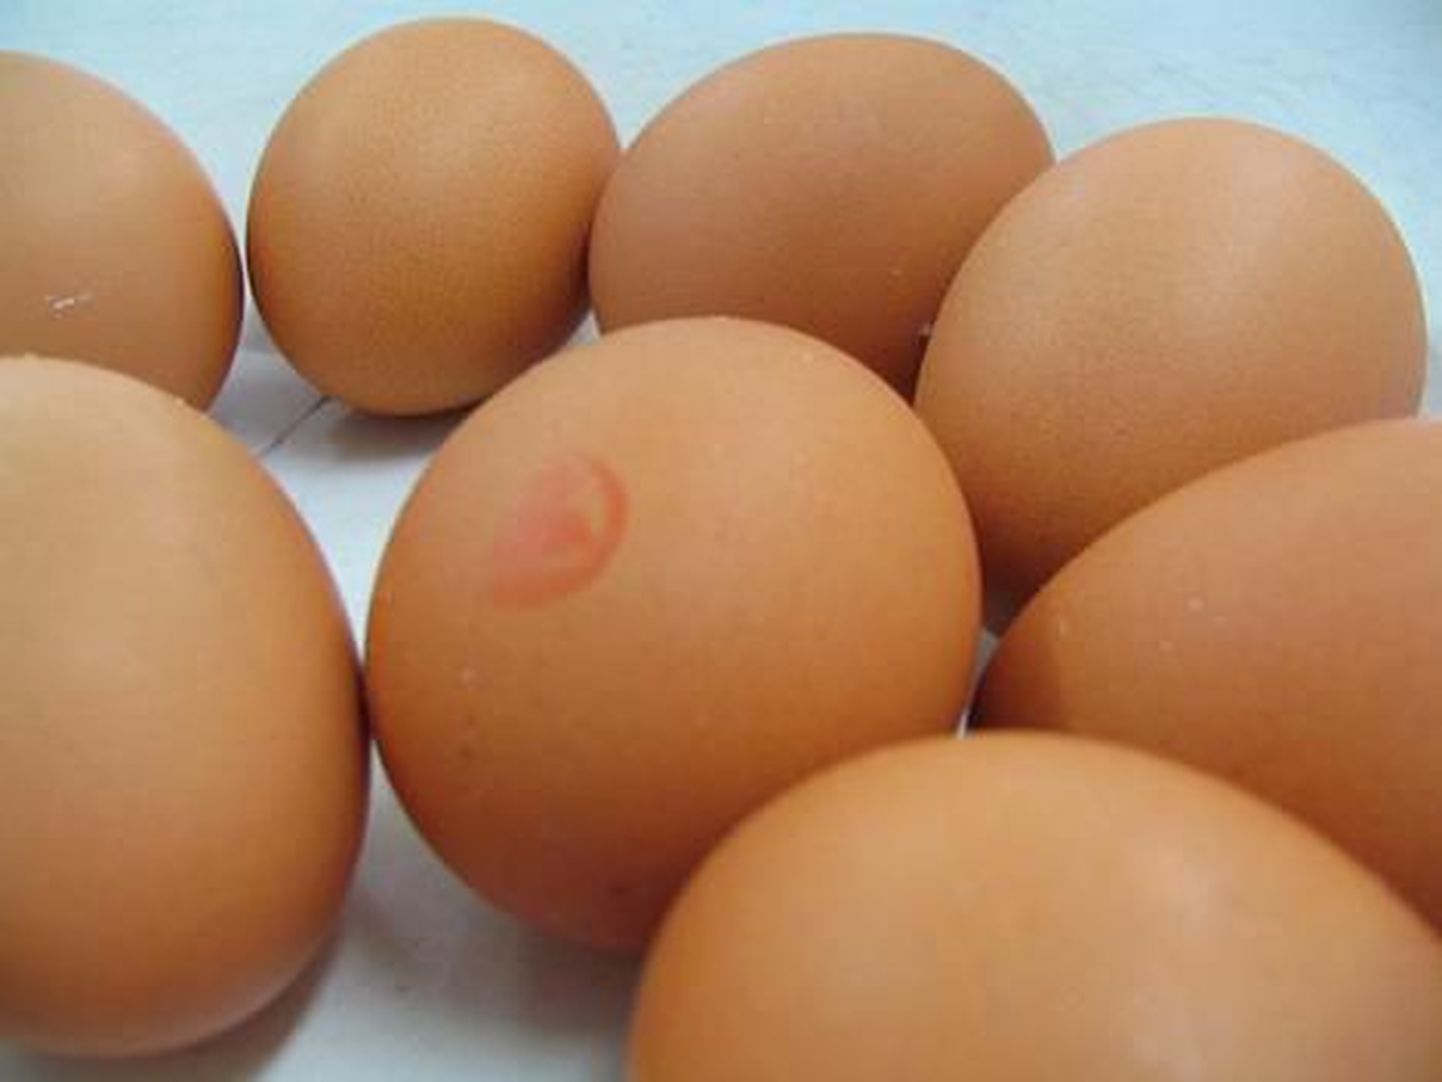 Куриные яйца, не прошедшие соответствующую кулинарную обработку, иногда бывают источником сальмонеллеза.